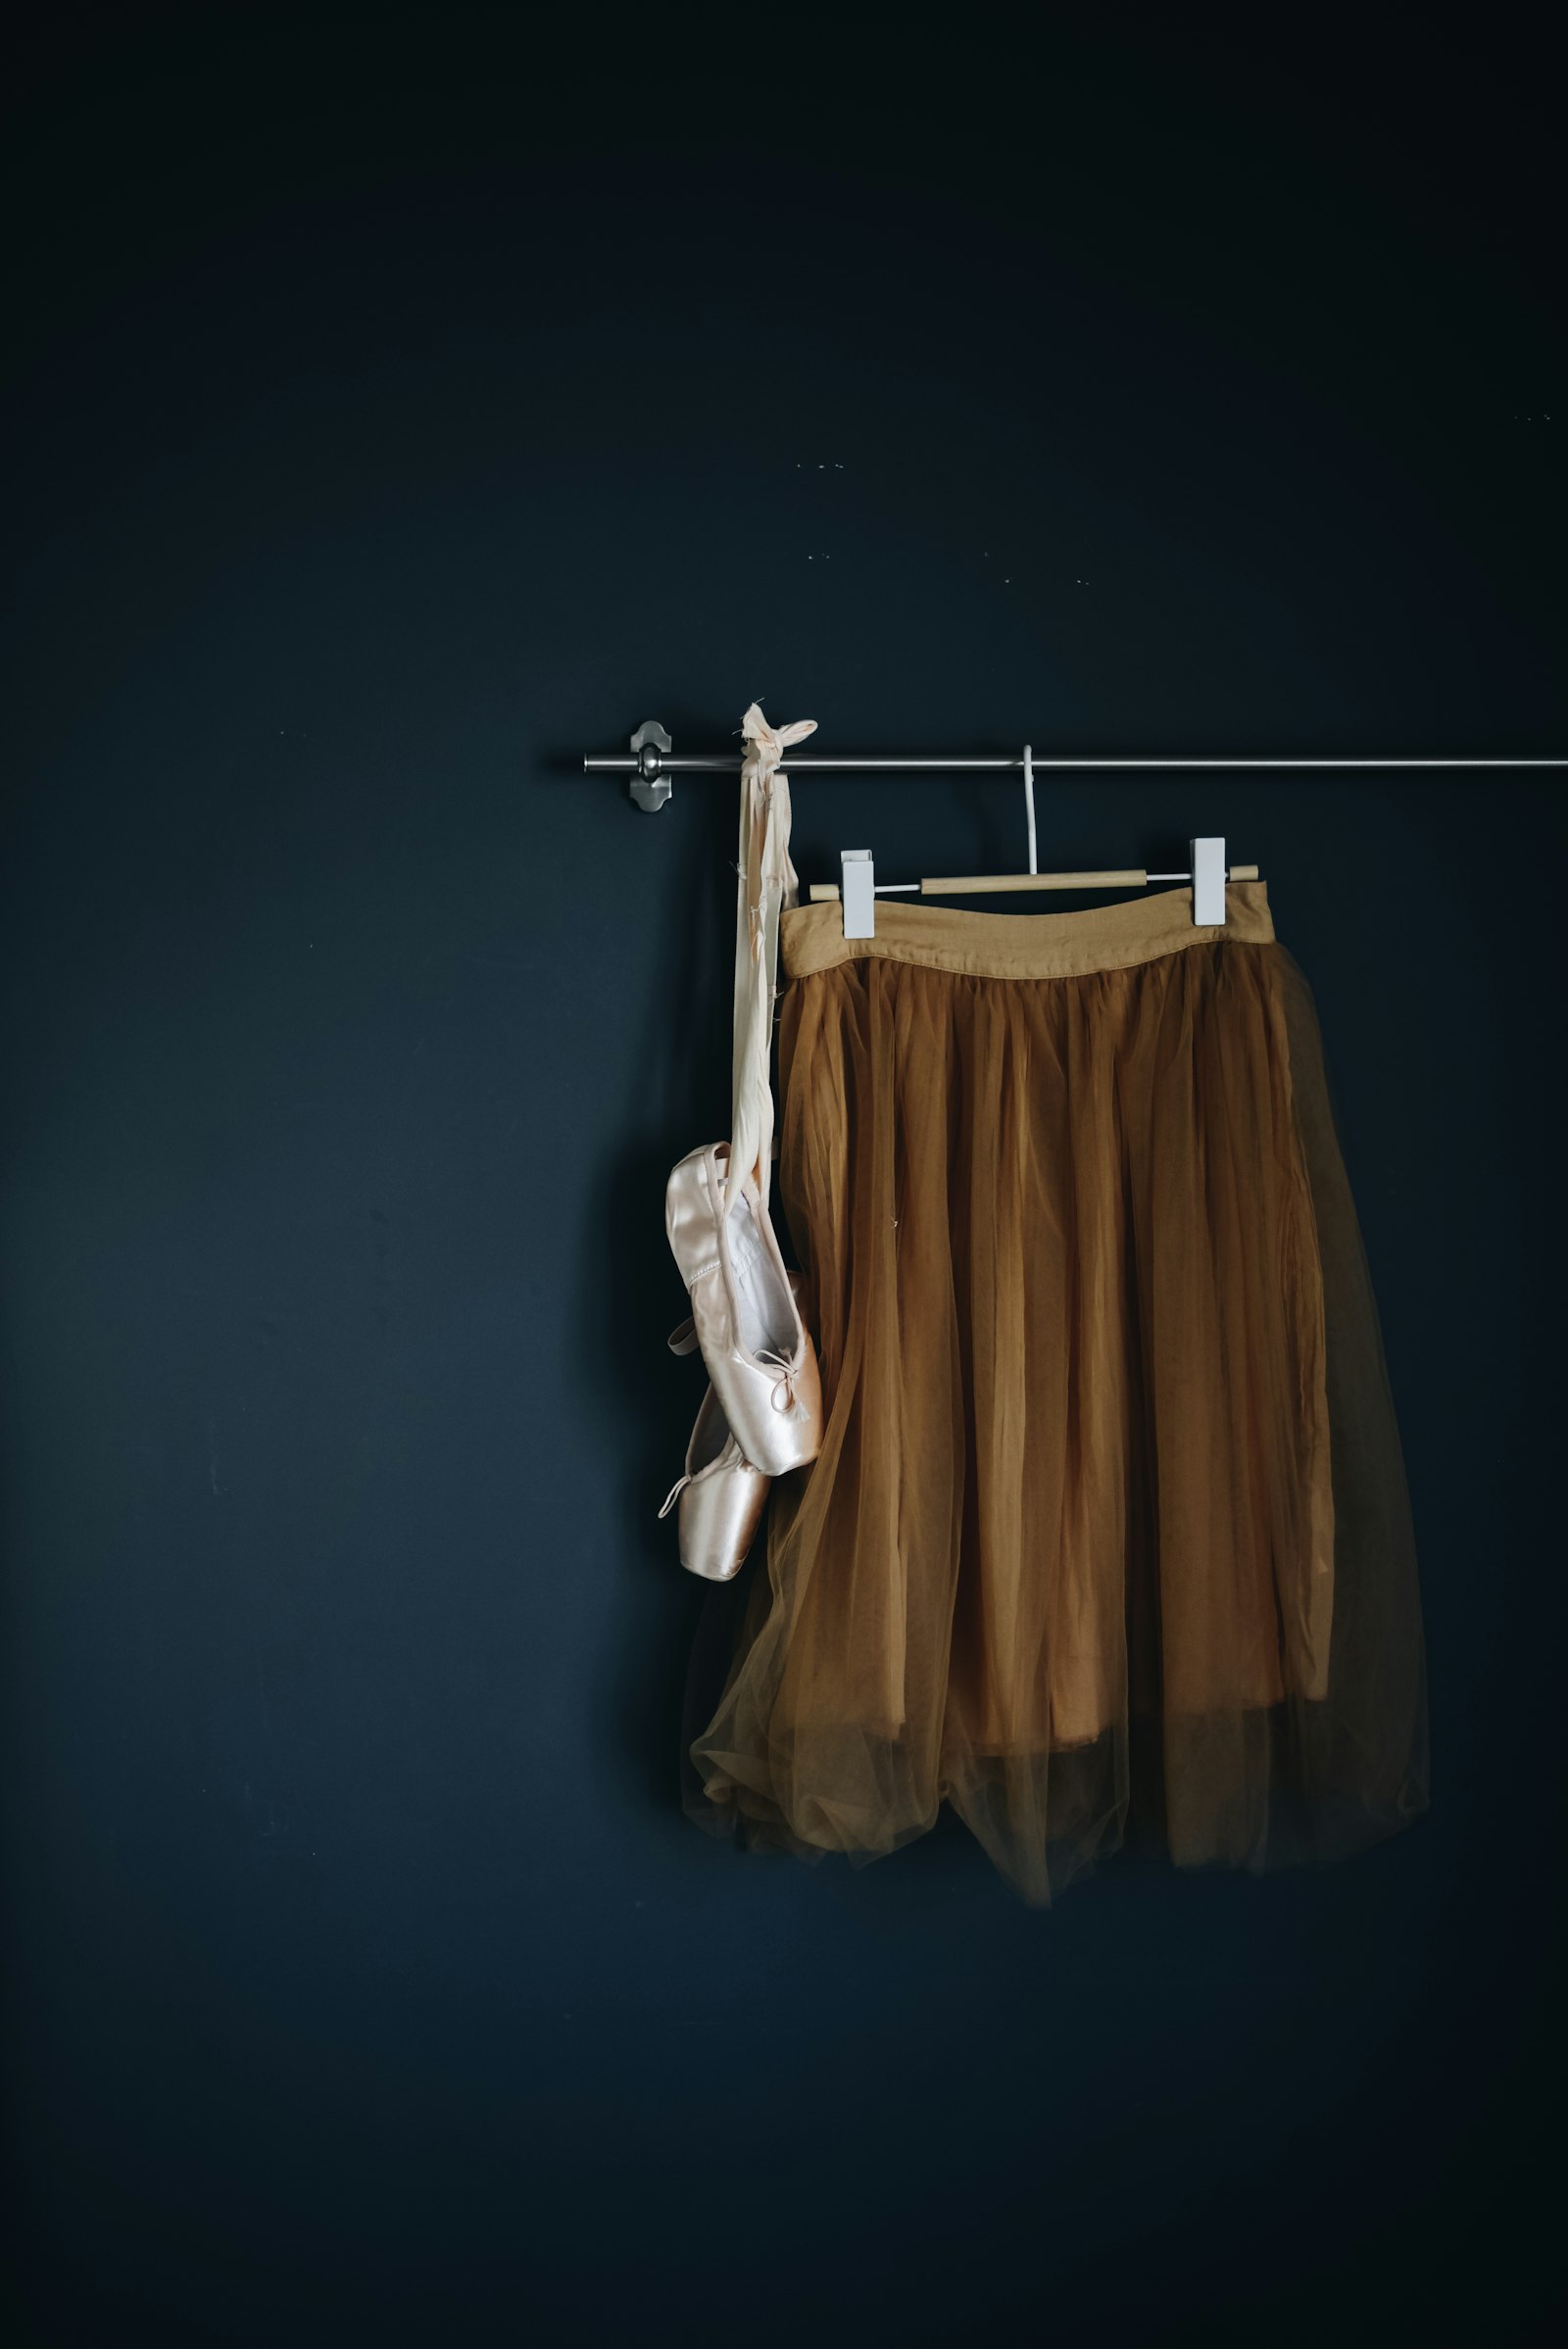 Nikon AF-S Nikkor 50mm F1.4G sample photo. Brown skirt hanged on photography